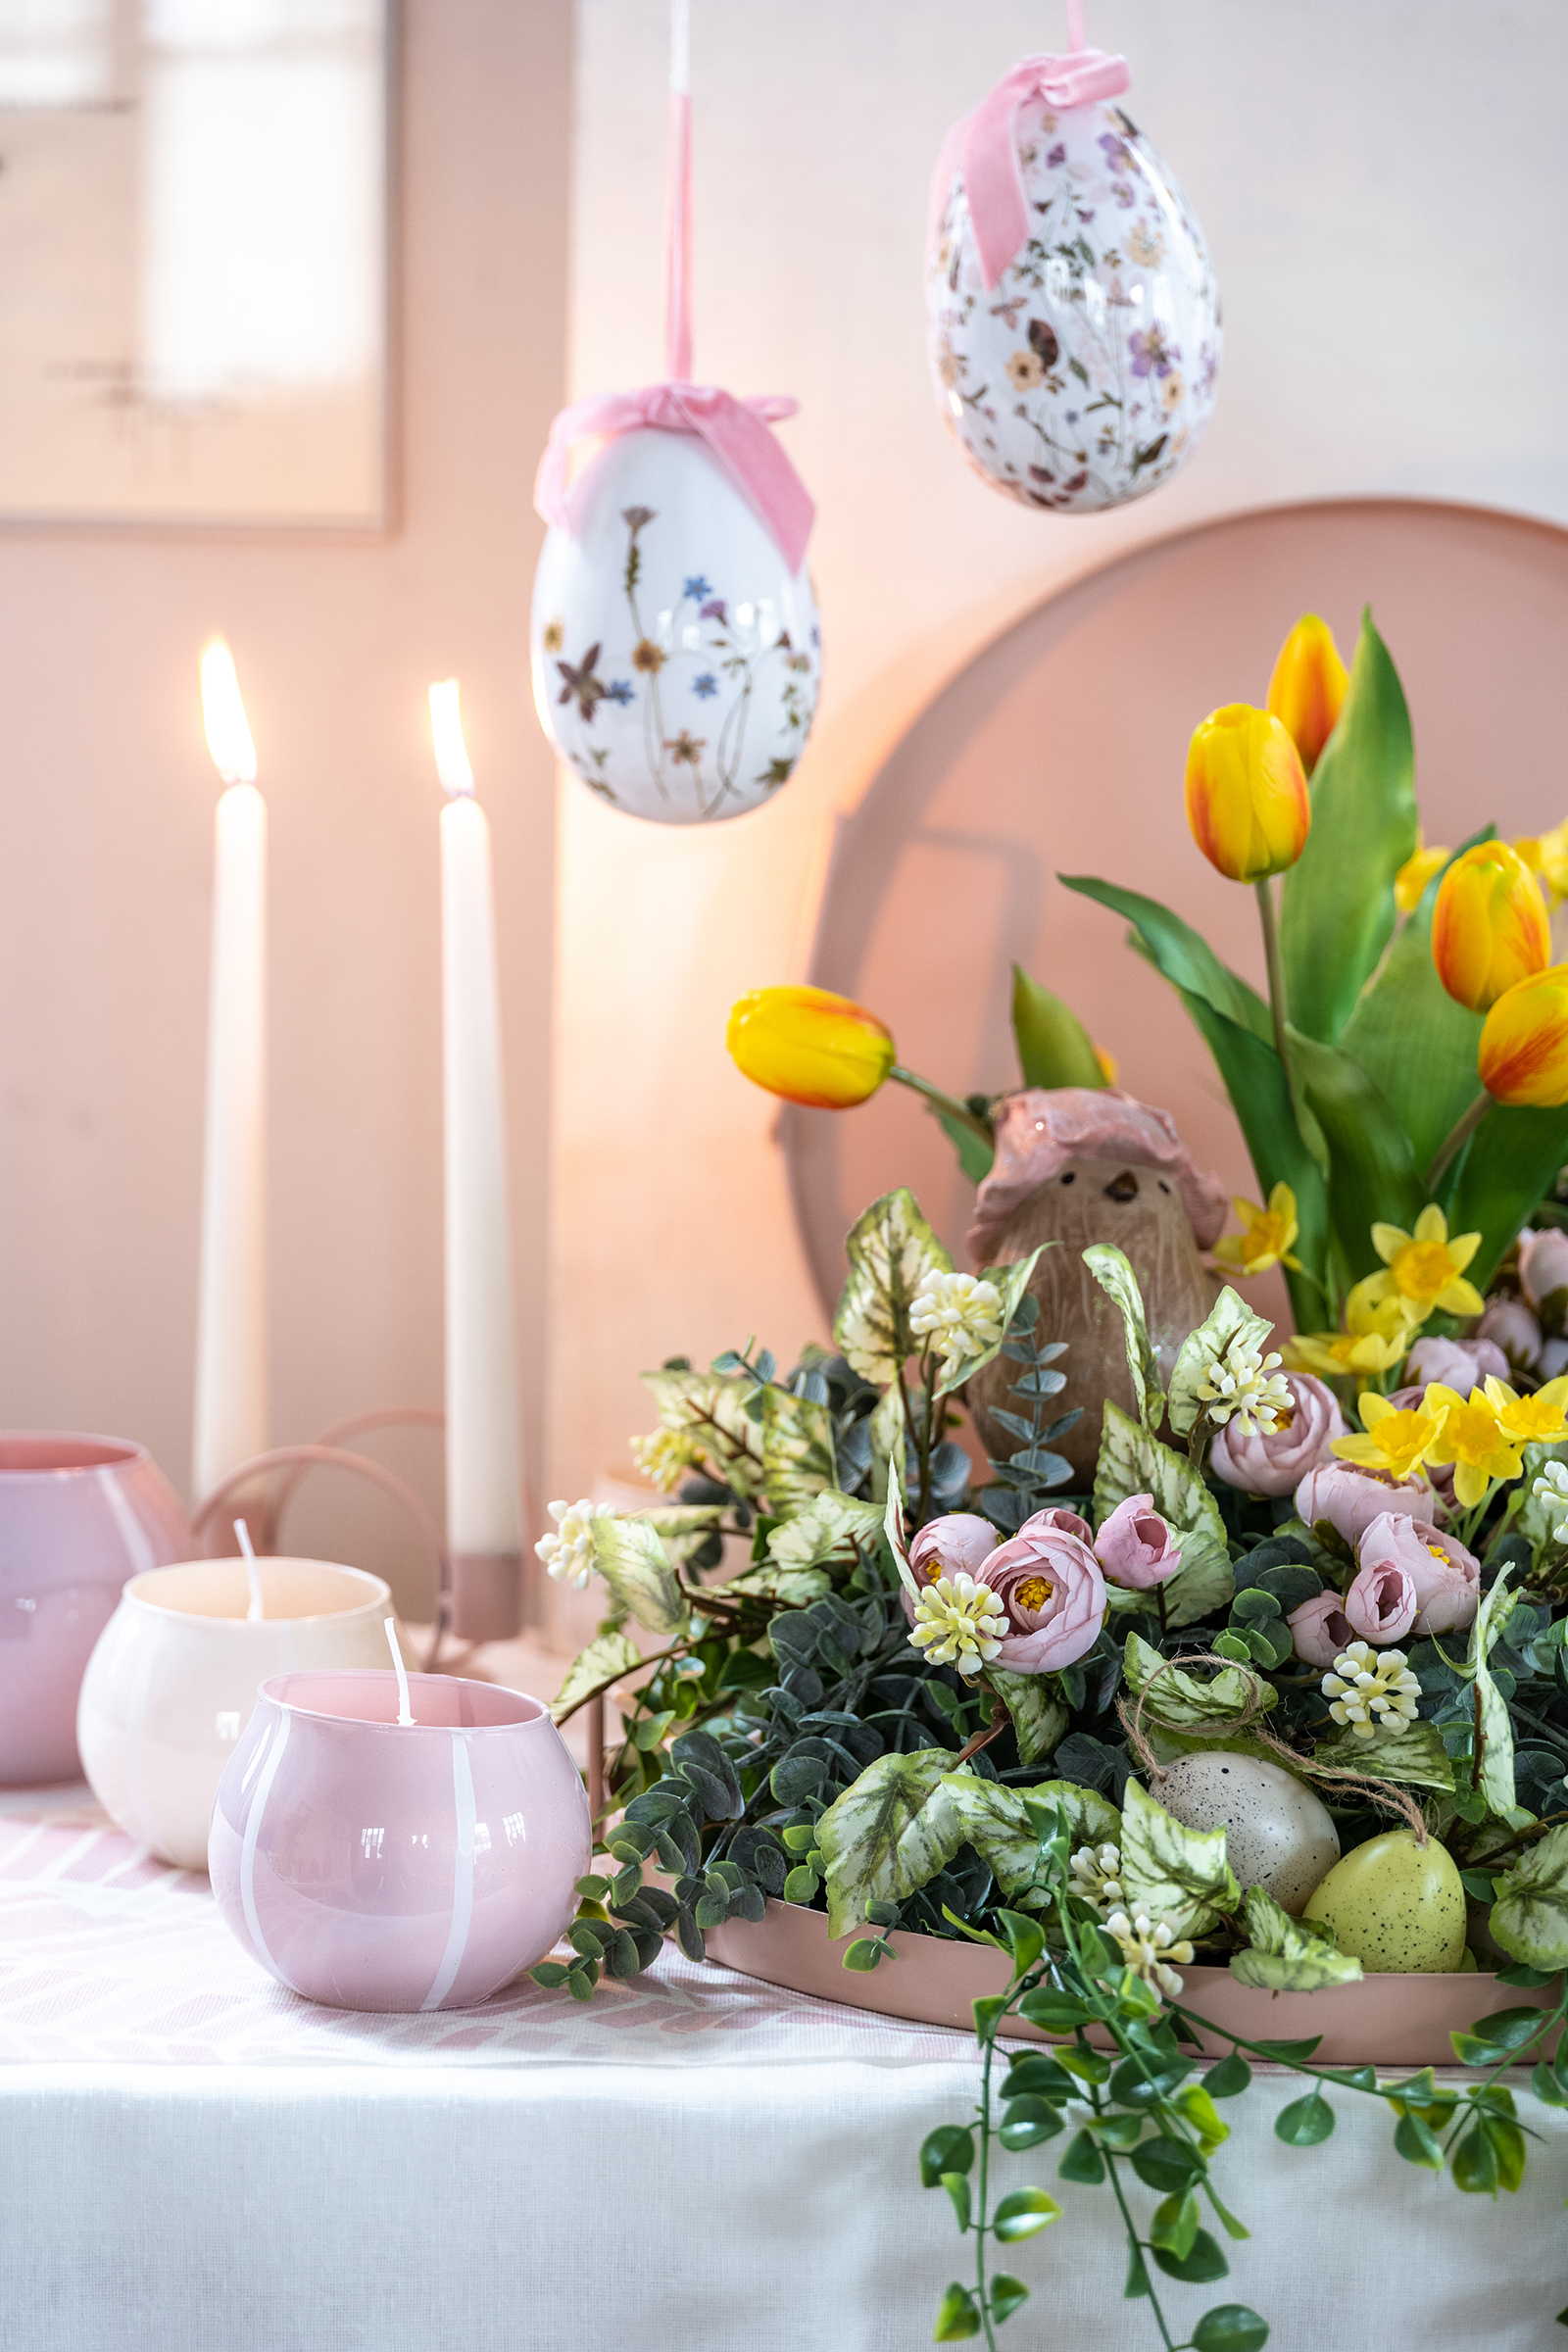 Decorazioni per Pasqua - Catalogo di Pasqua 2022 con packaging dolciario, oggettistica e complementi d'arredo